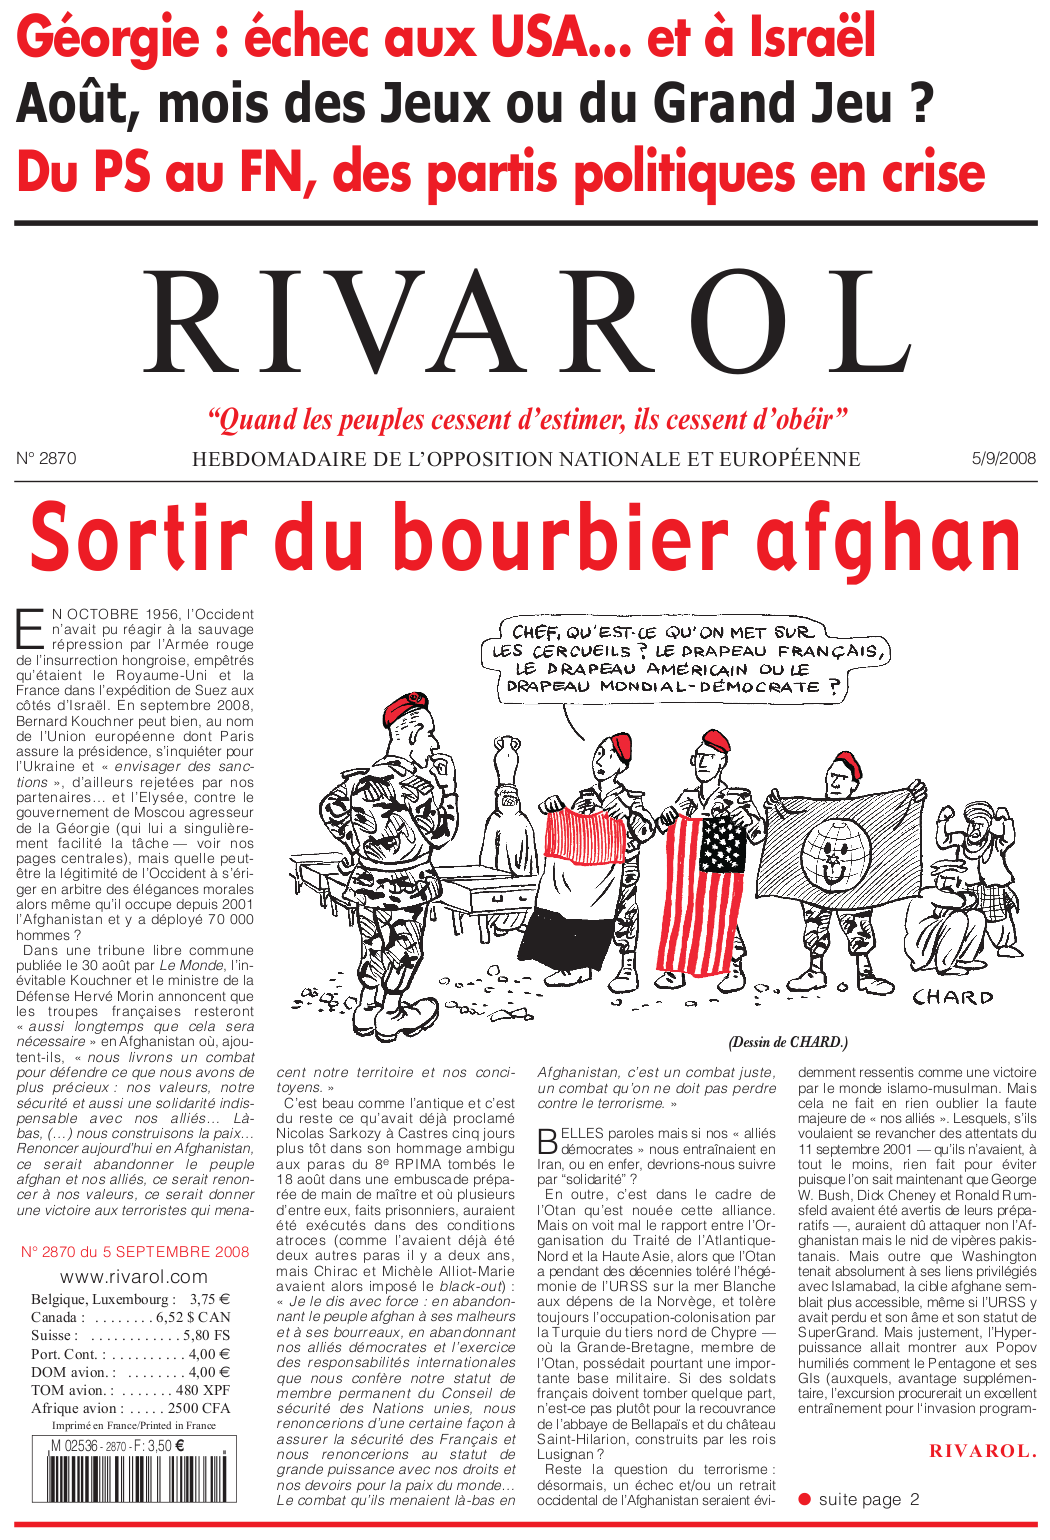 Rivarol n°2870 version numérique (PDF)